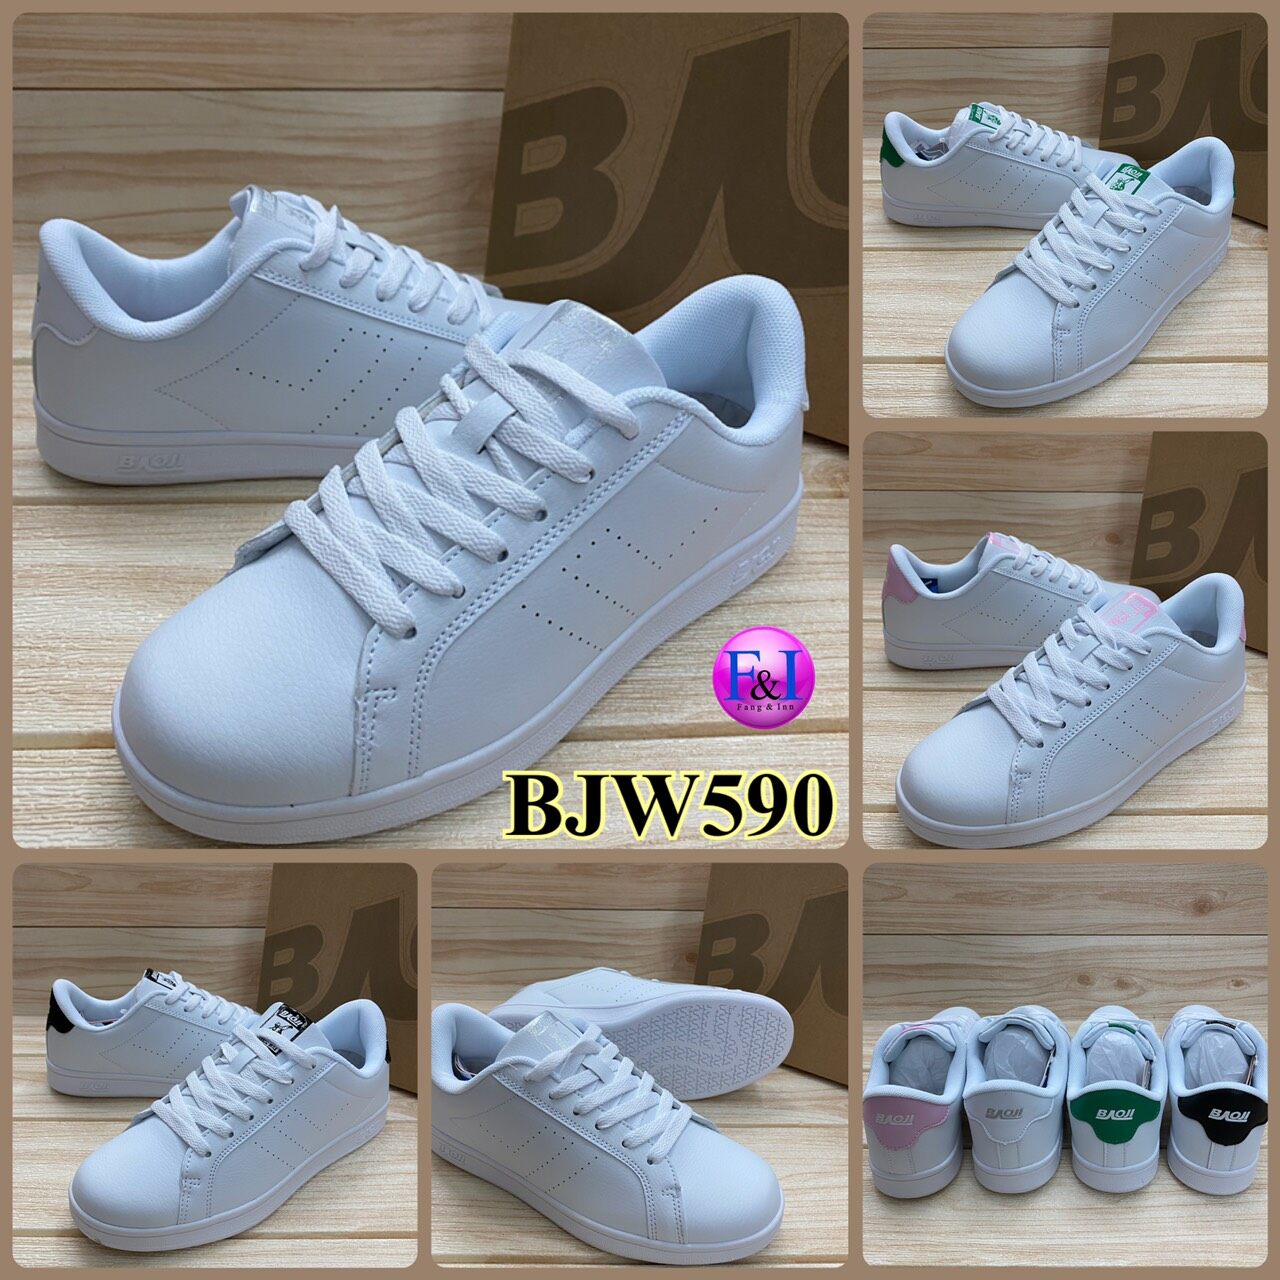 Baoji BJW 590 รองเท้าสนิกเกอร์ (37-41) สีขาวดำ/ขาวชมพู/ขาวเขียว/ขาวเงิน